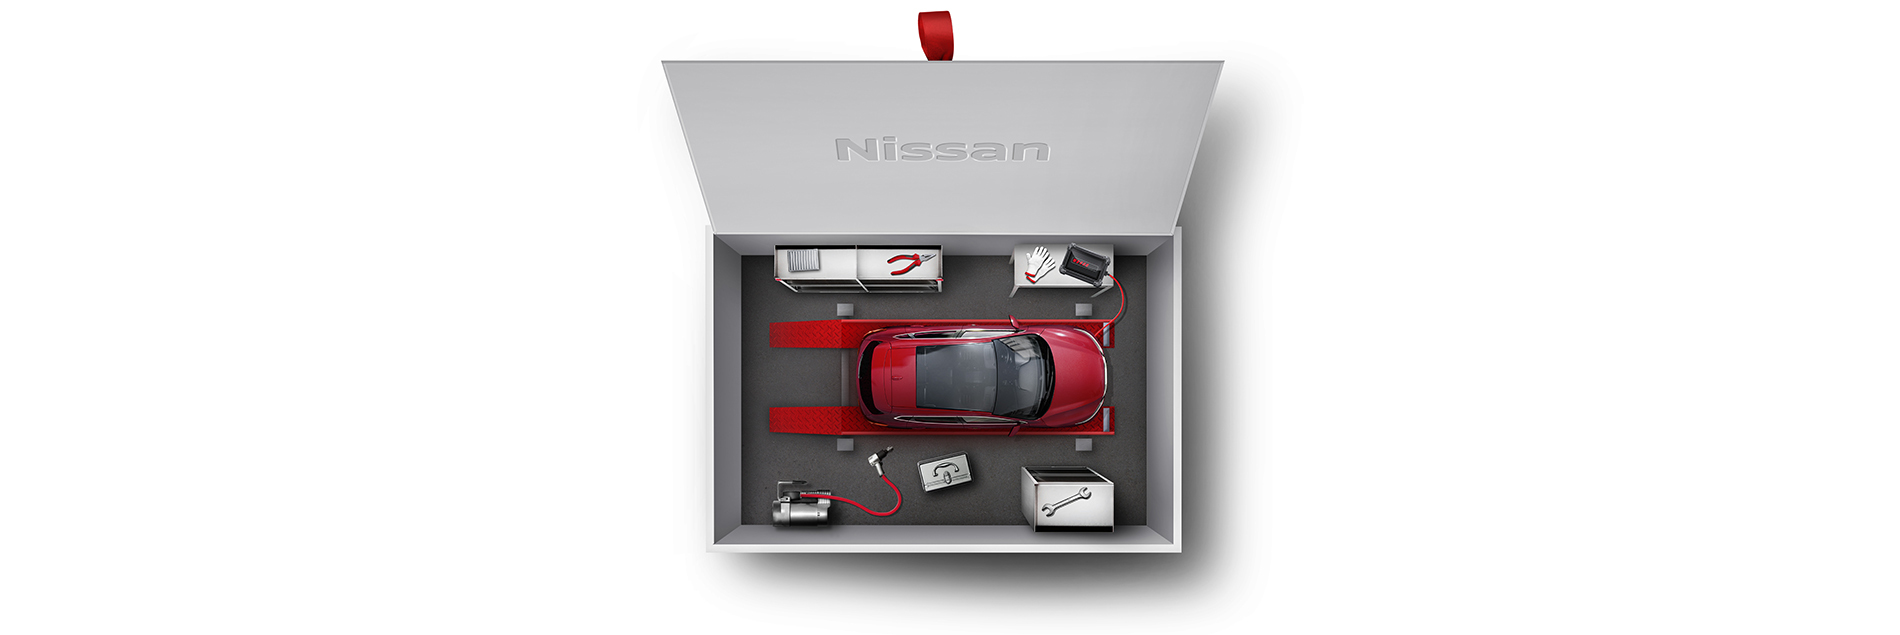 Nissan предлагает клиентам приобретать «Сервисный контракт» с собственного официального сайта